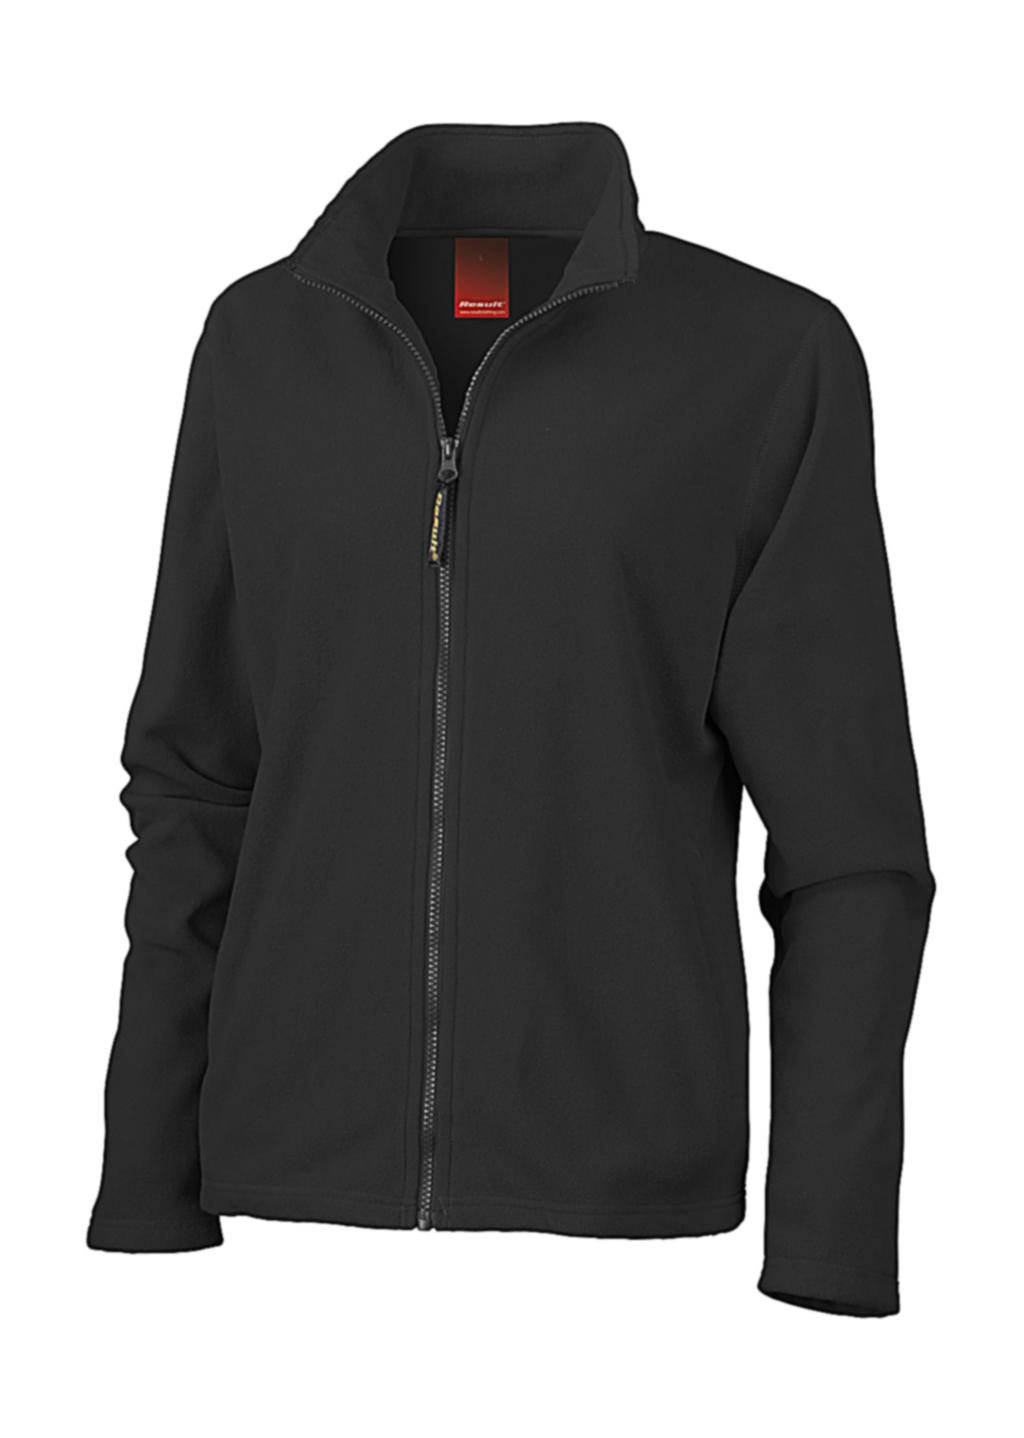 Ladies Horizon High Grade Microfleece Jacket zum Besticken und Bedrucken in der Farbe Black mit Ihren Logo, Schriftzug oder Motiv.